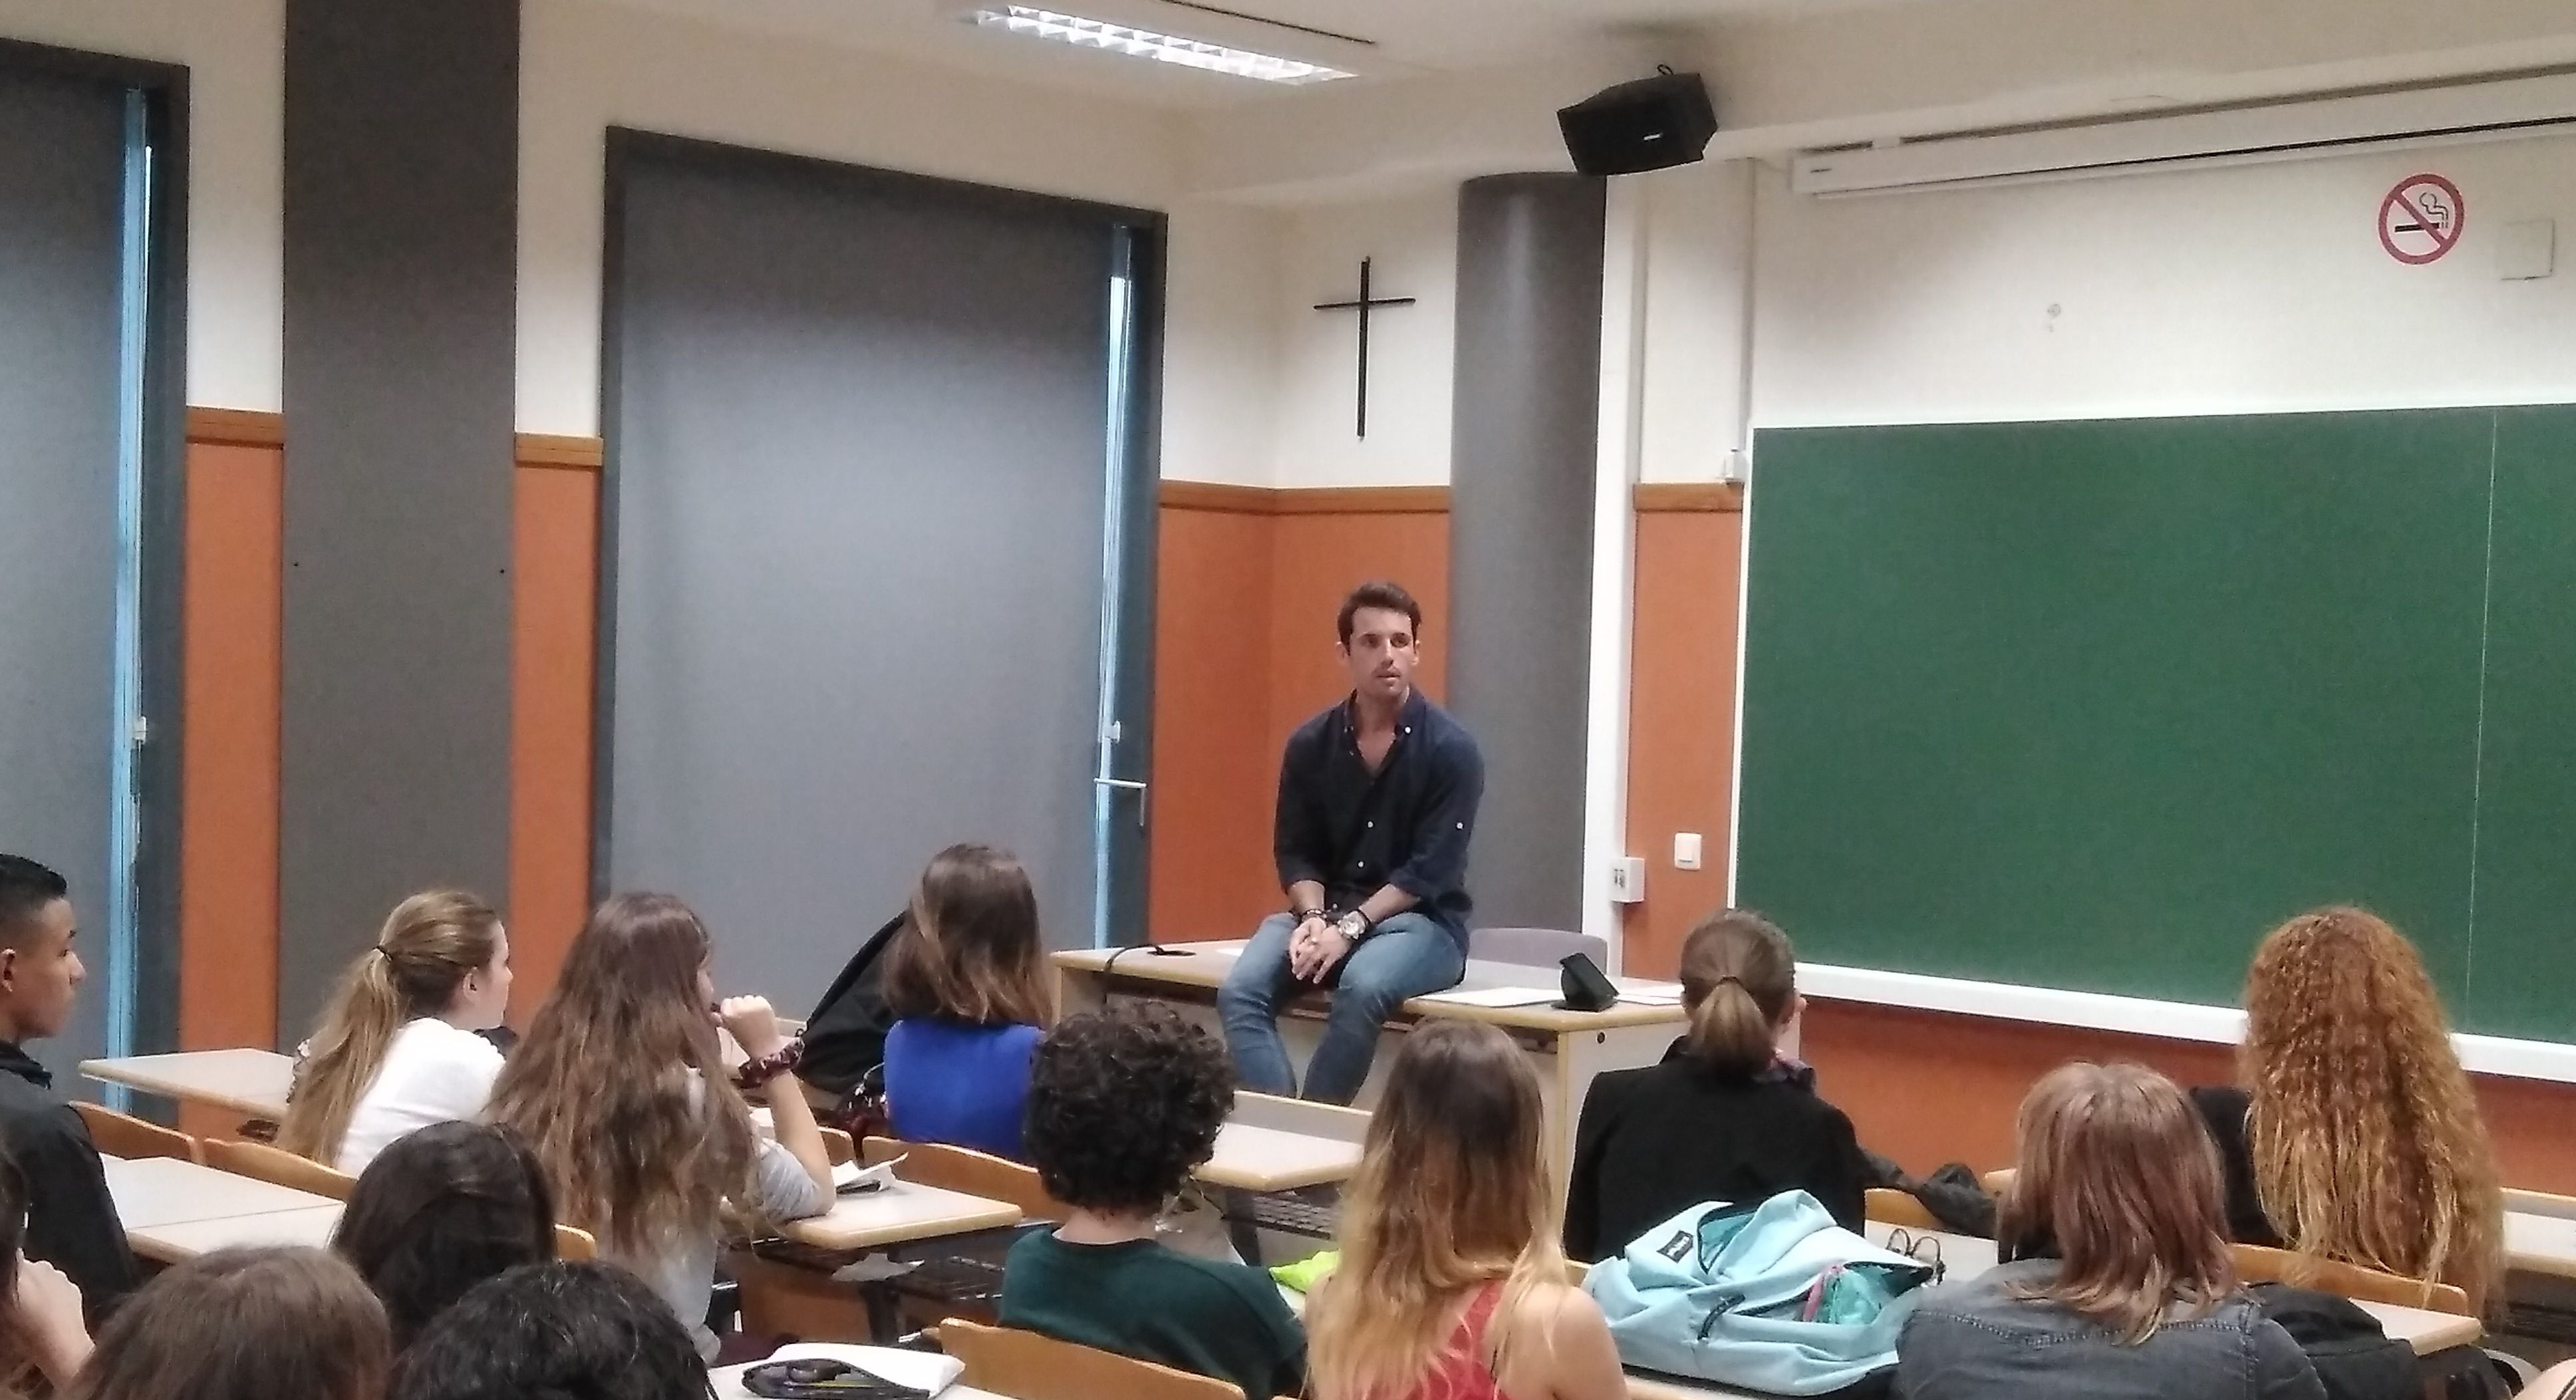 Diego López scout del LOSC Lille dándo una charla a alumnos de primero.